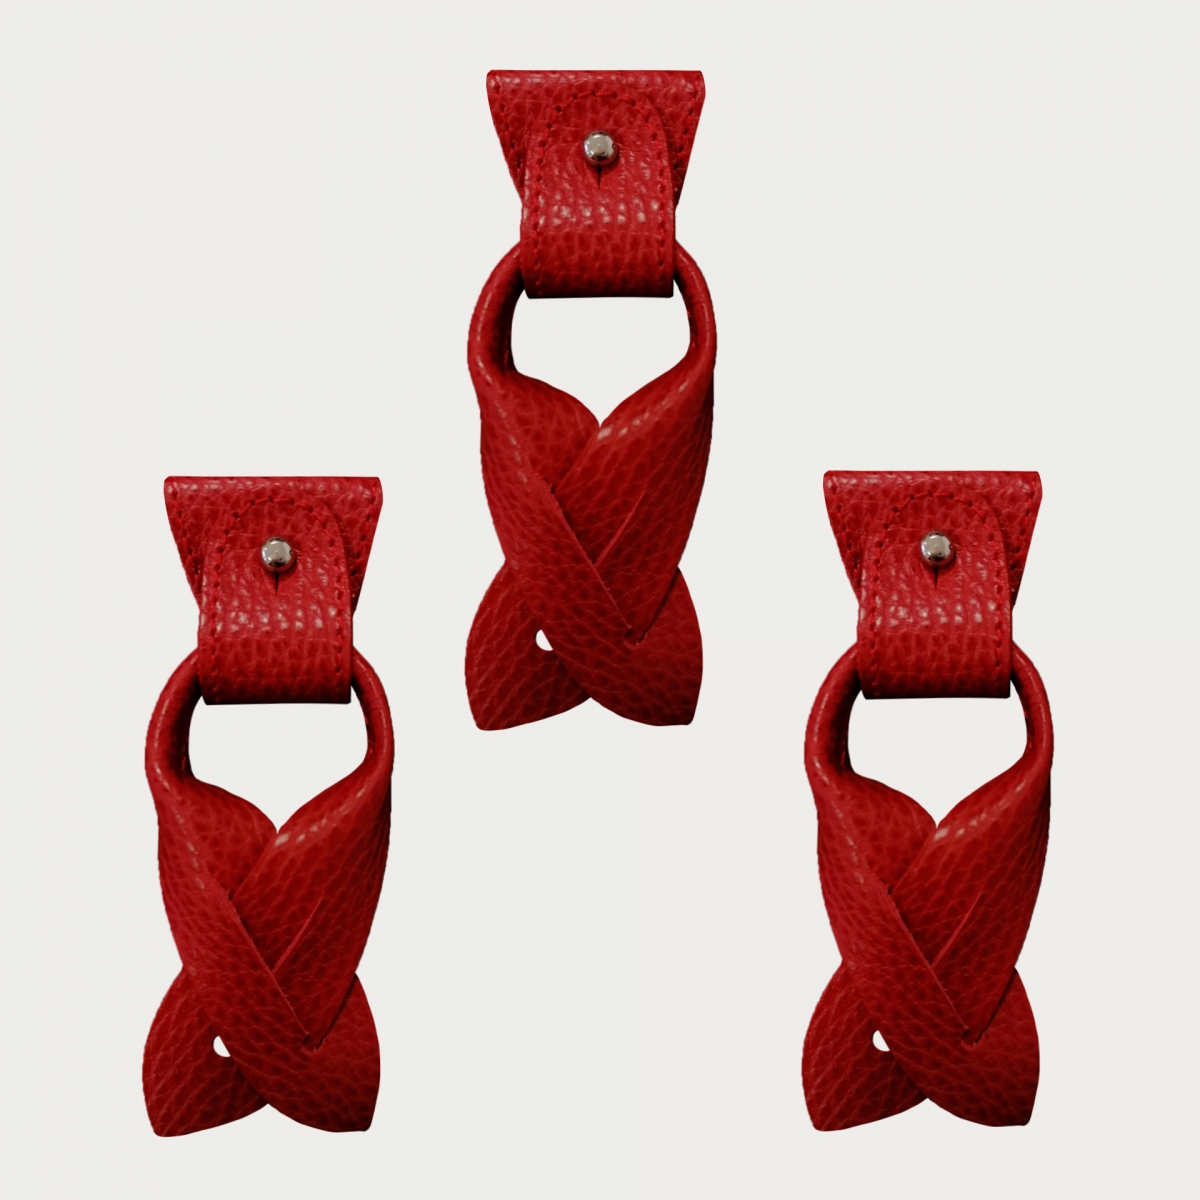 Remplacement pour bretelles Y- Extrémités convertibles + pattes pour boutons, rouge